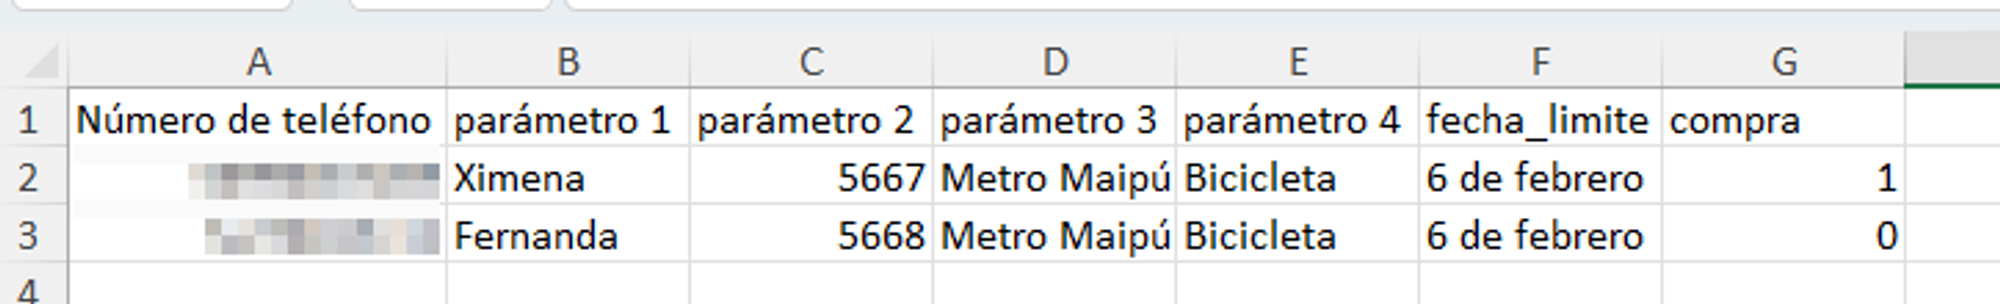 Imagen referencial de un archivo tipo excel donde se suben 2 metadatos, además de los parámetros. En este caso “fecha_limite” es un metadato tipo texto y “compra” es un parámetro tipo Sí/No.